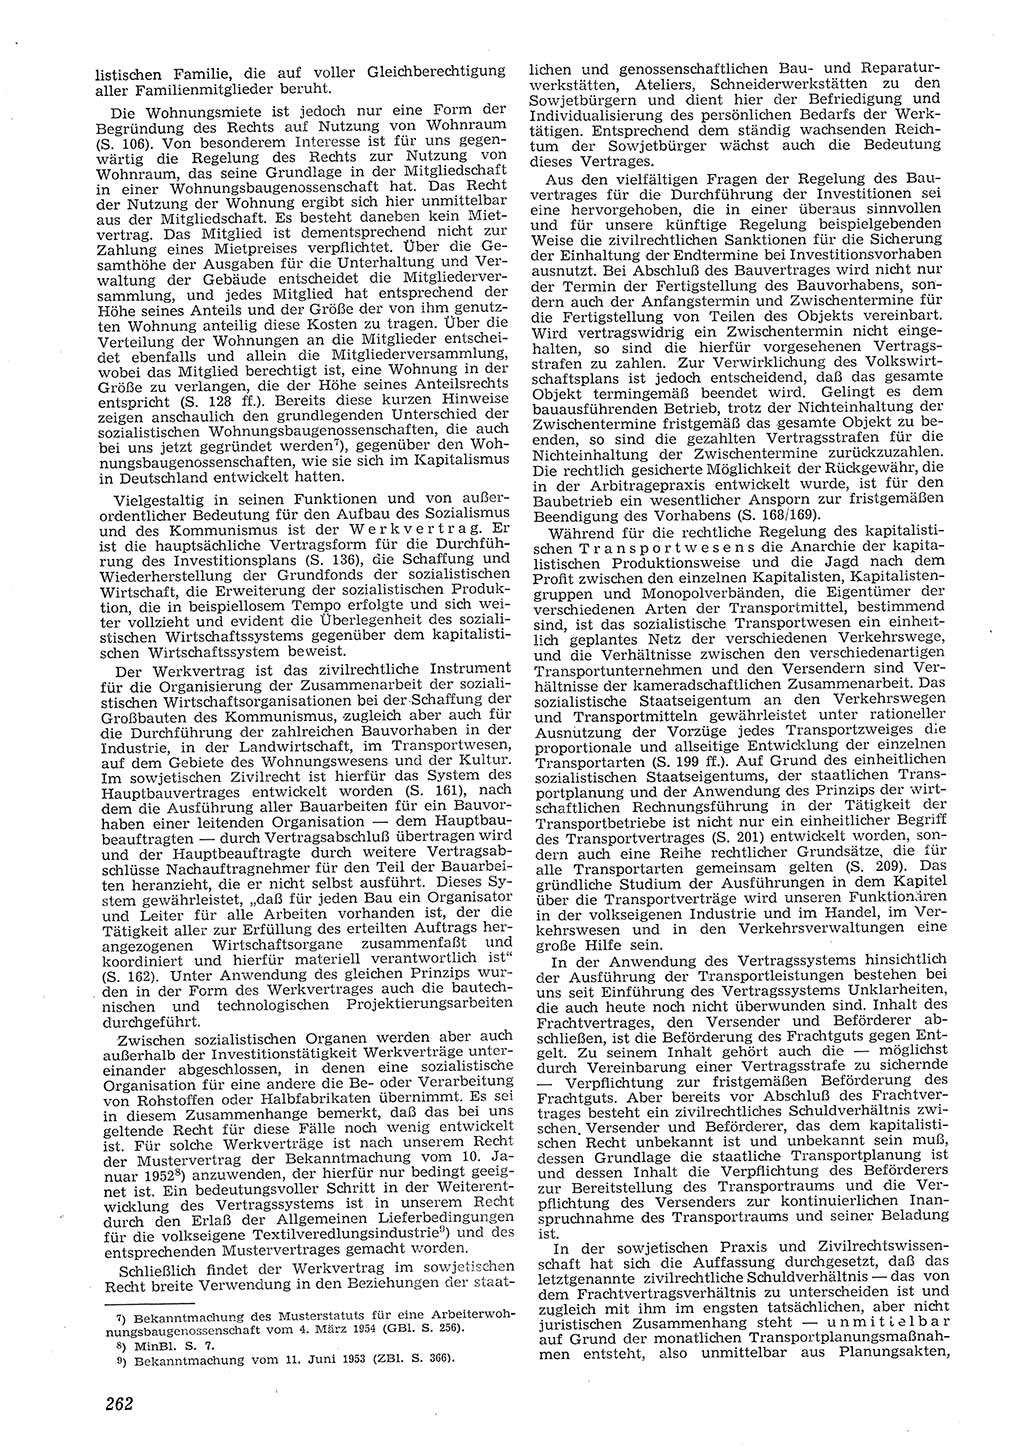 Neue Justiz (NJ), Zeitschrift für Recht und Rechtswissenschaft [Deutsche Demokratische Republik (DDR)], 8. Jahrgang 1954, Seite 262 (NJ DDR 1954, S. 262)